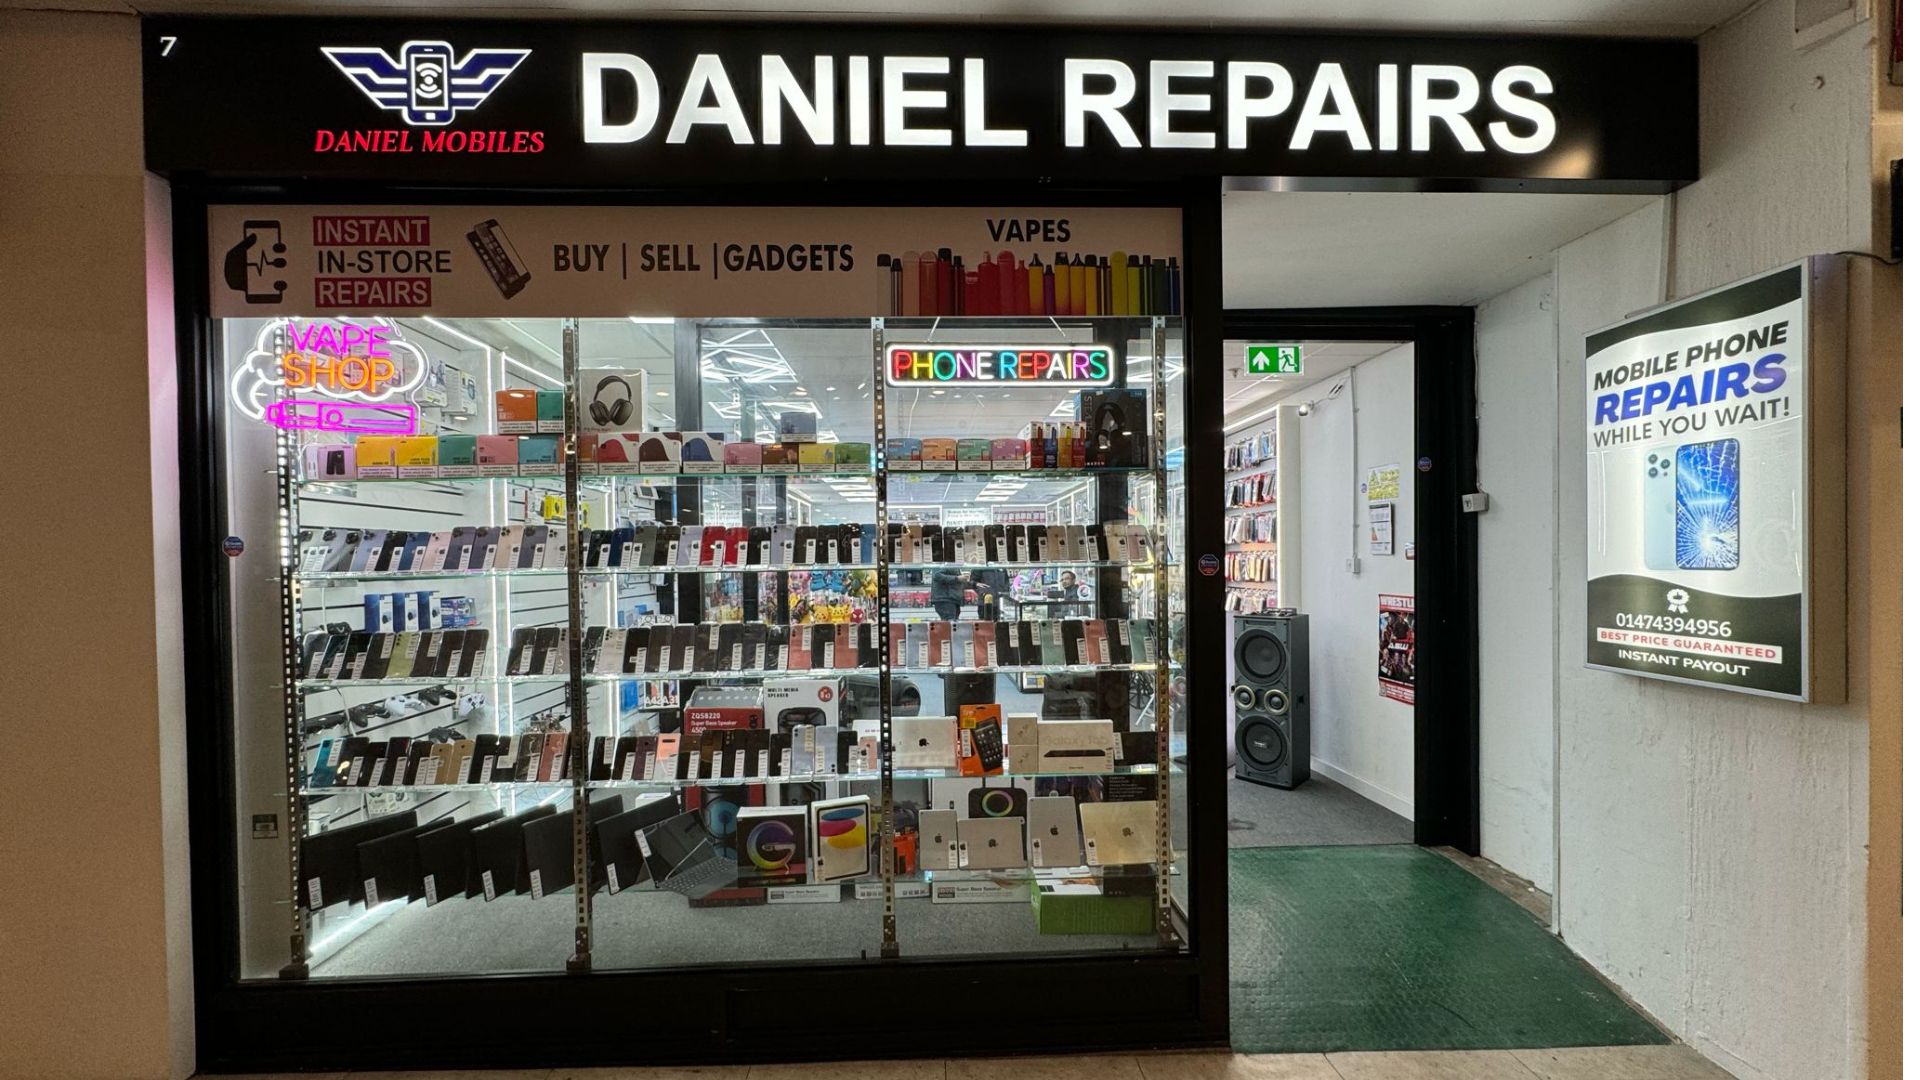 Instant In-Store Mobile Repairs at Daniel Repairs